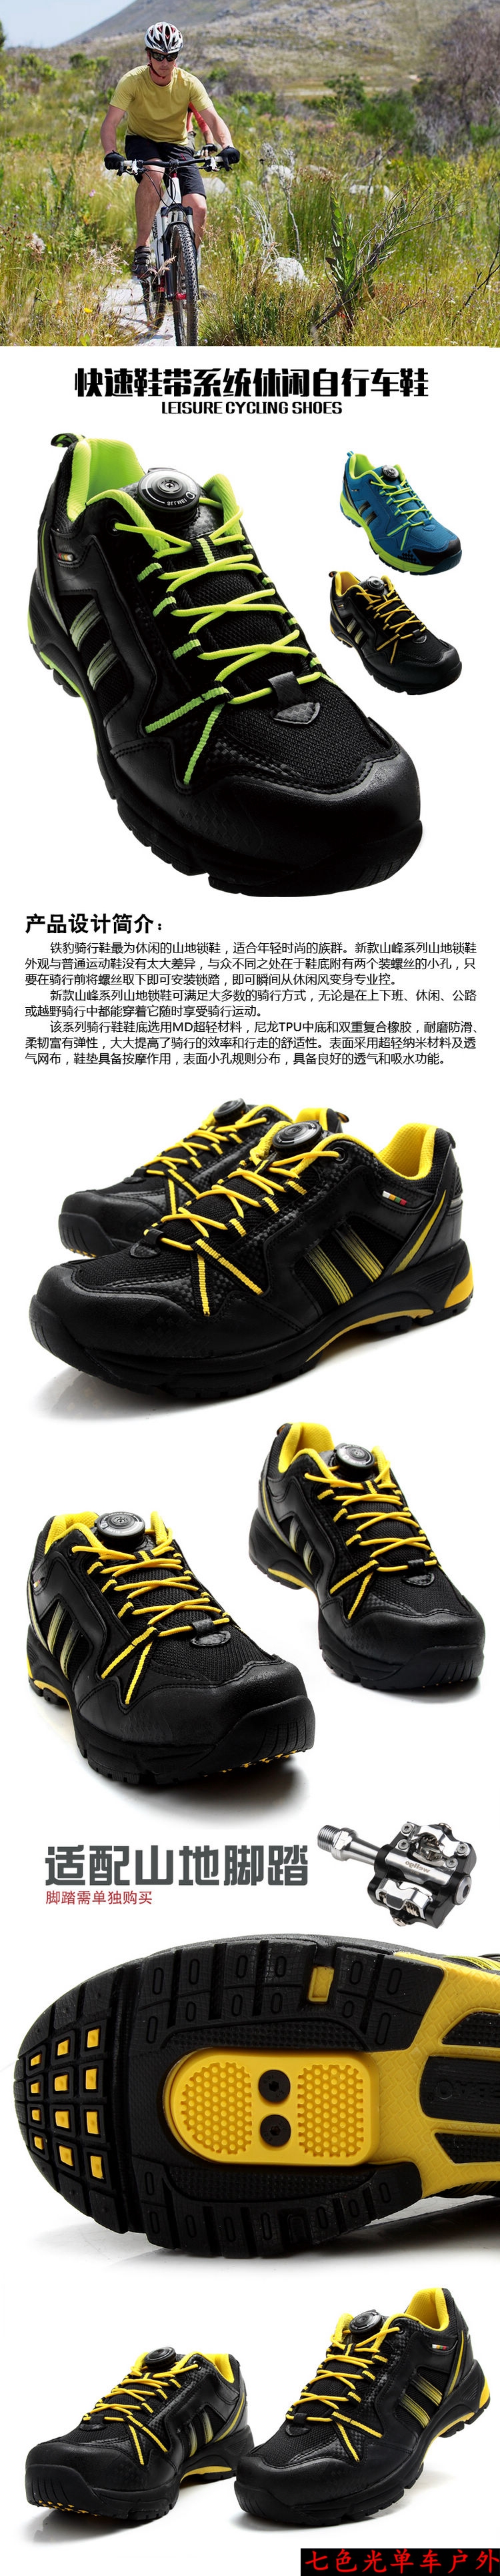 Chaussures pour cyclistes commun - Ref 888179 Image 6